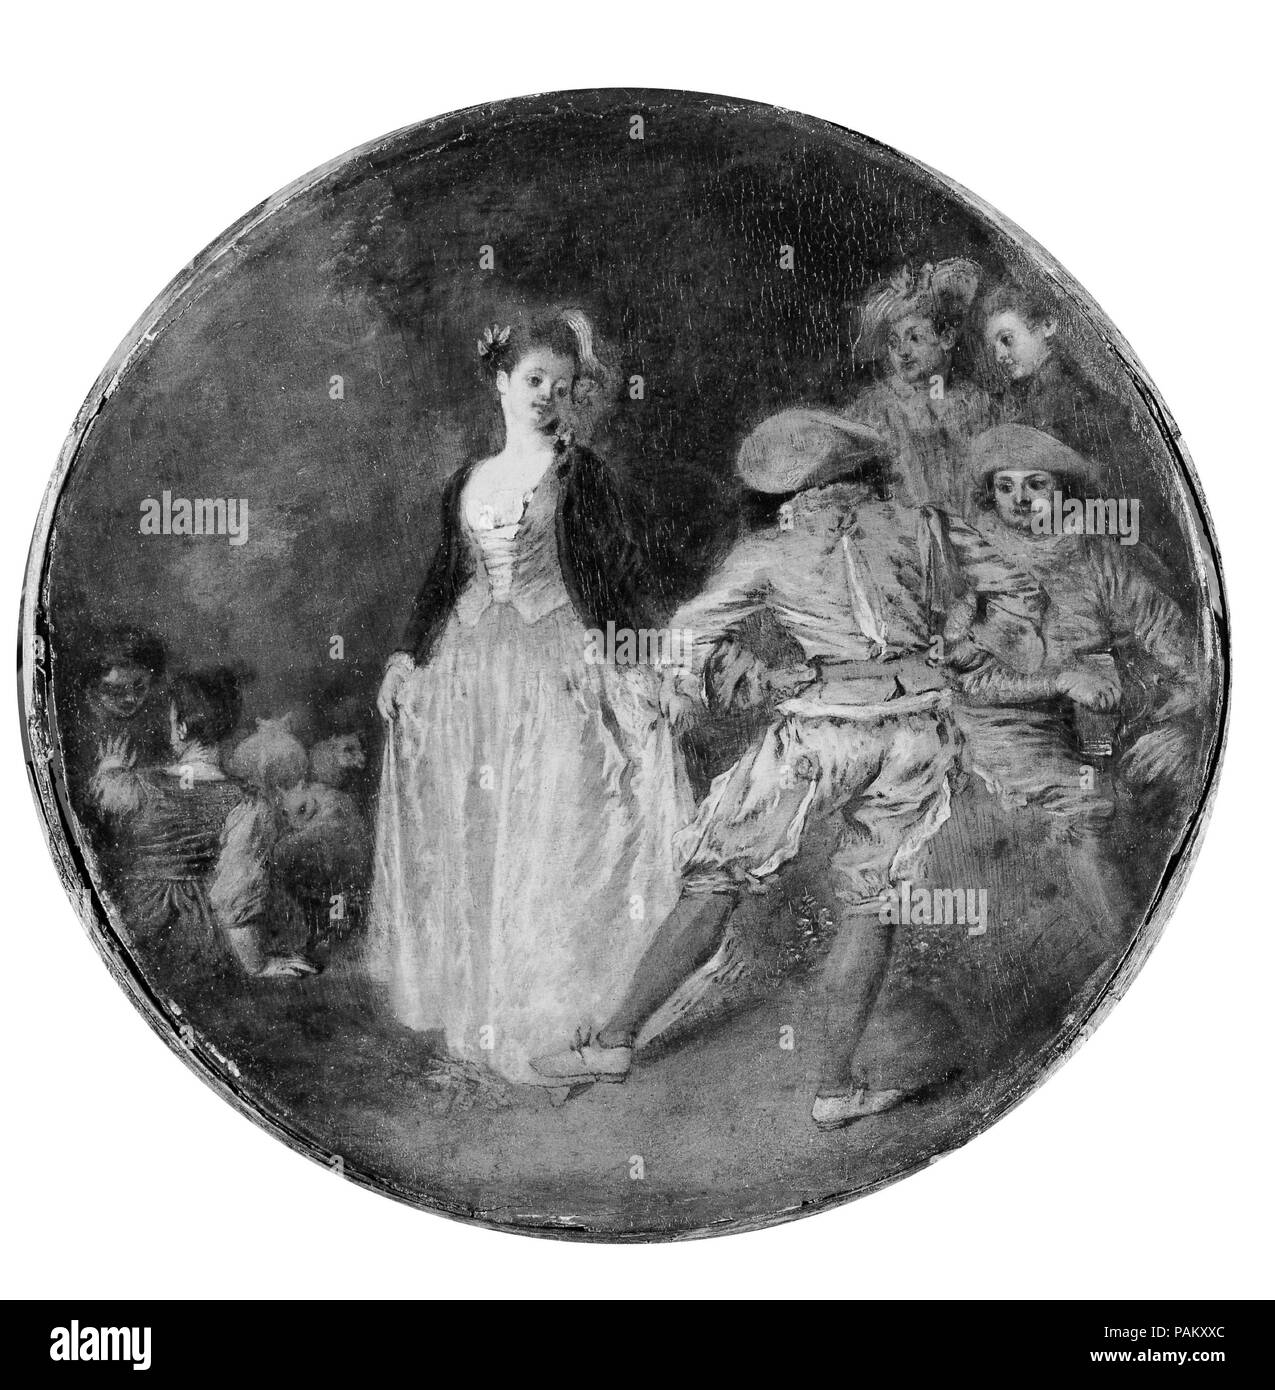 Le pays de la danse. Artiste : copie après Antoine Watteau (Français, fin du xviiie siècle). Dimensions : Diamètre 8 1/2 in. (21,6 cm). Musée : Metropolitan Museum of Art, New York, USA. Banque D'Images